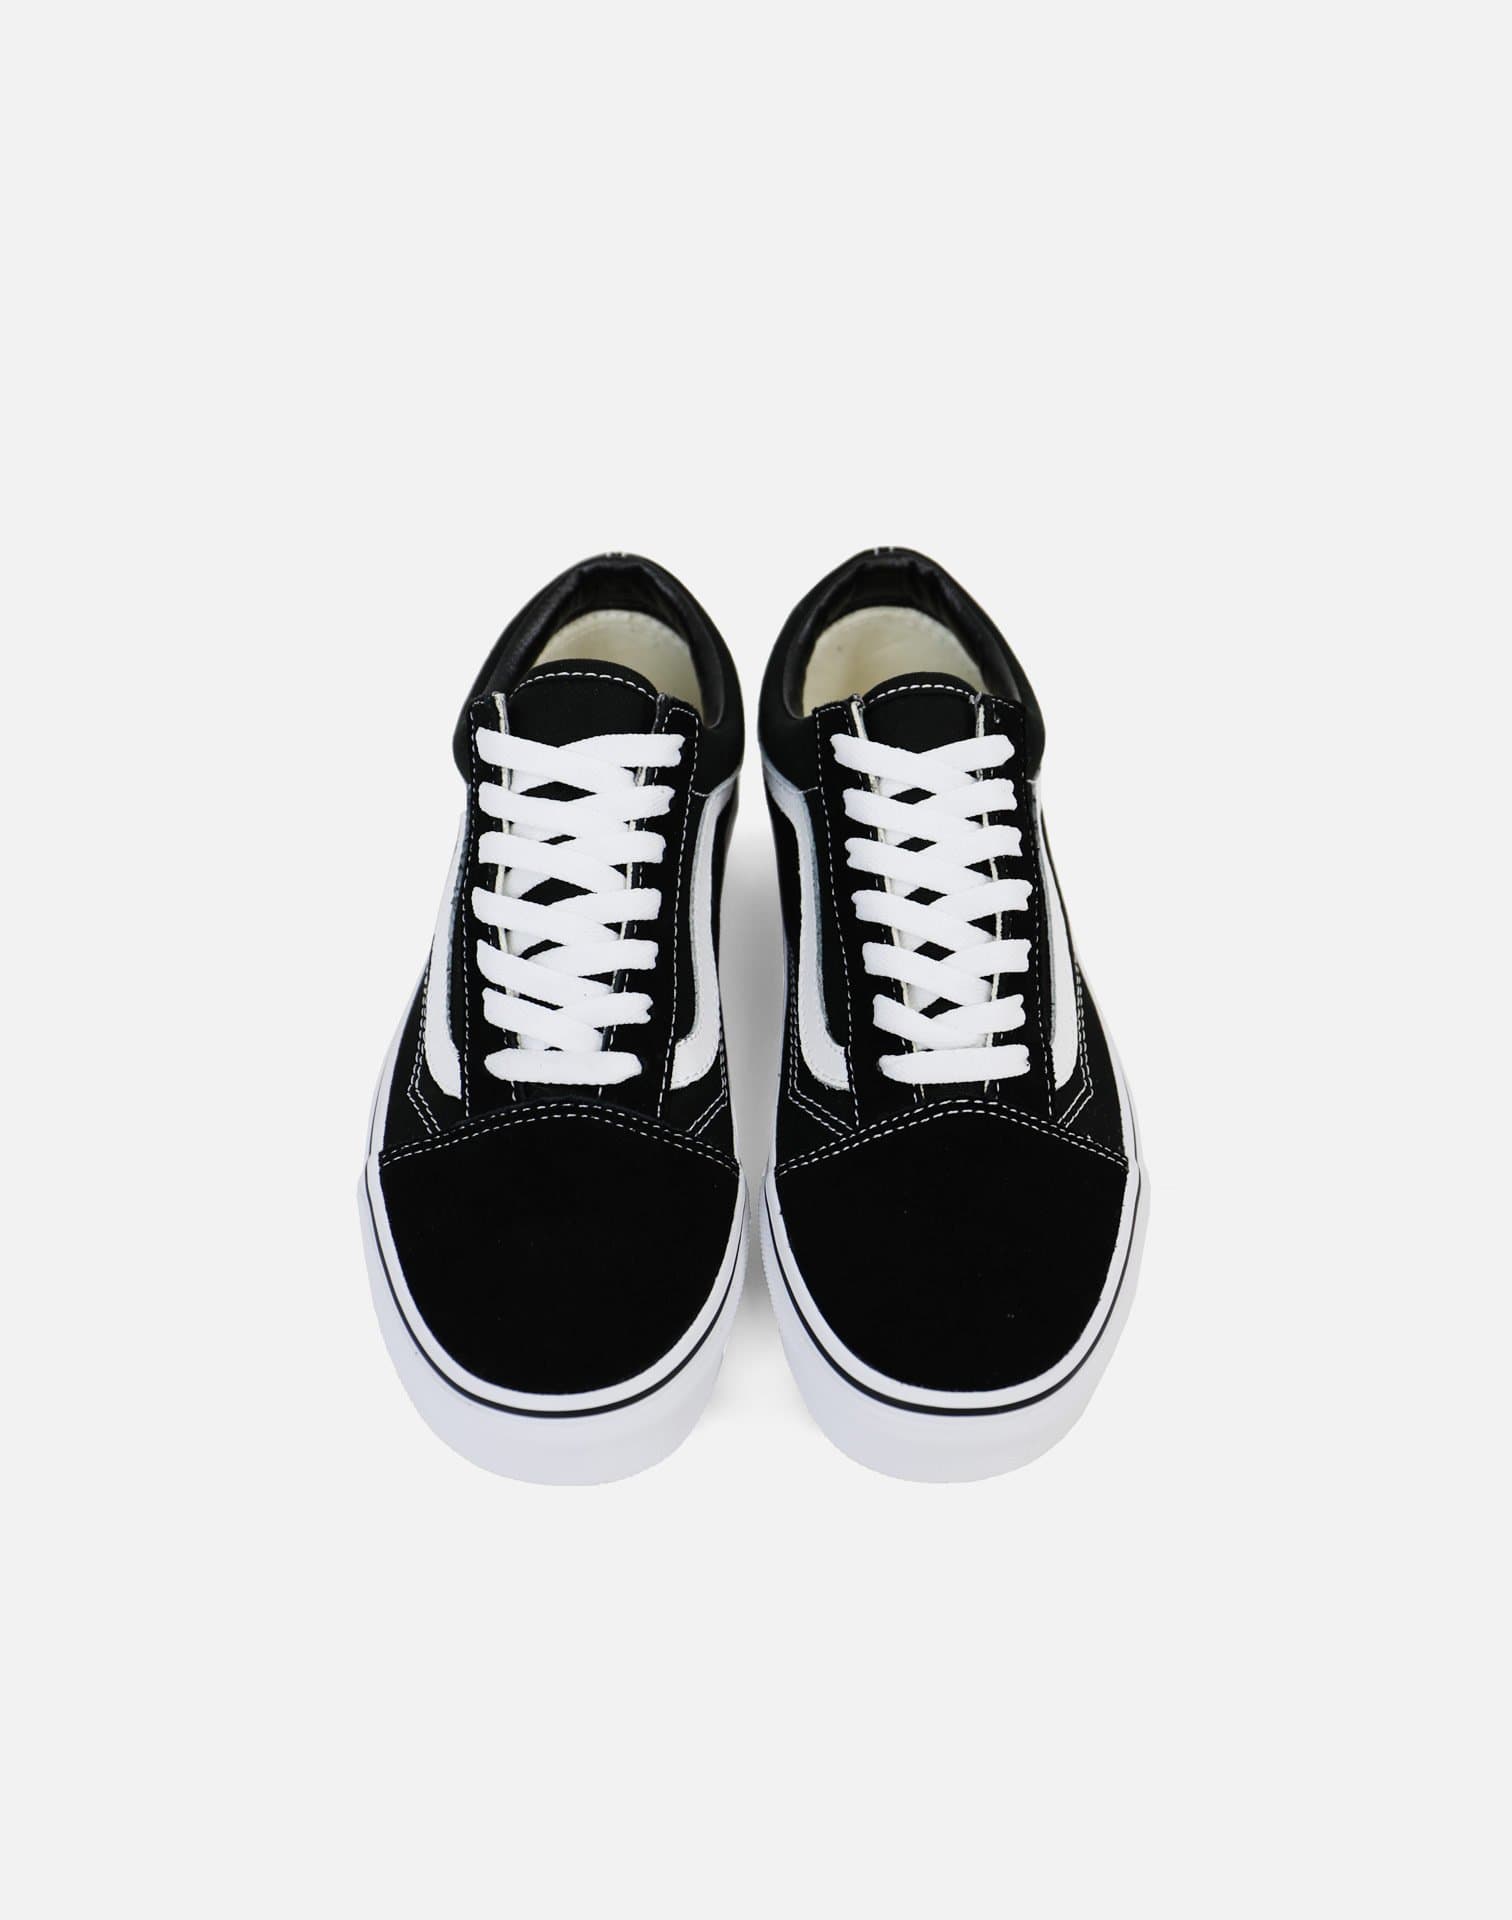  Vans, Old Skool Sneakers (3.5, Black/White, Numeric_3_Point_5)